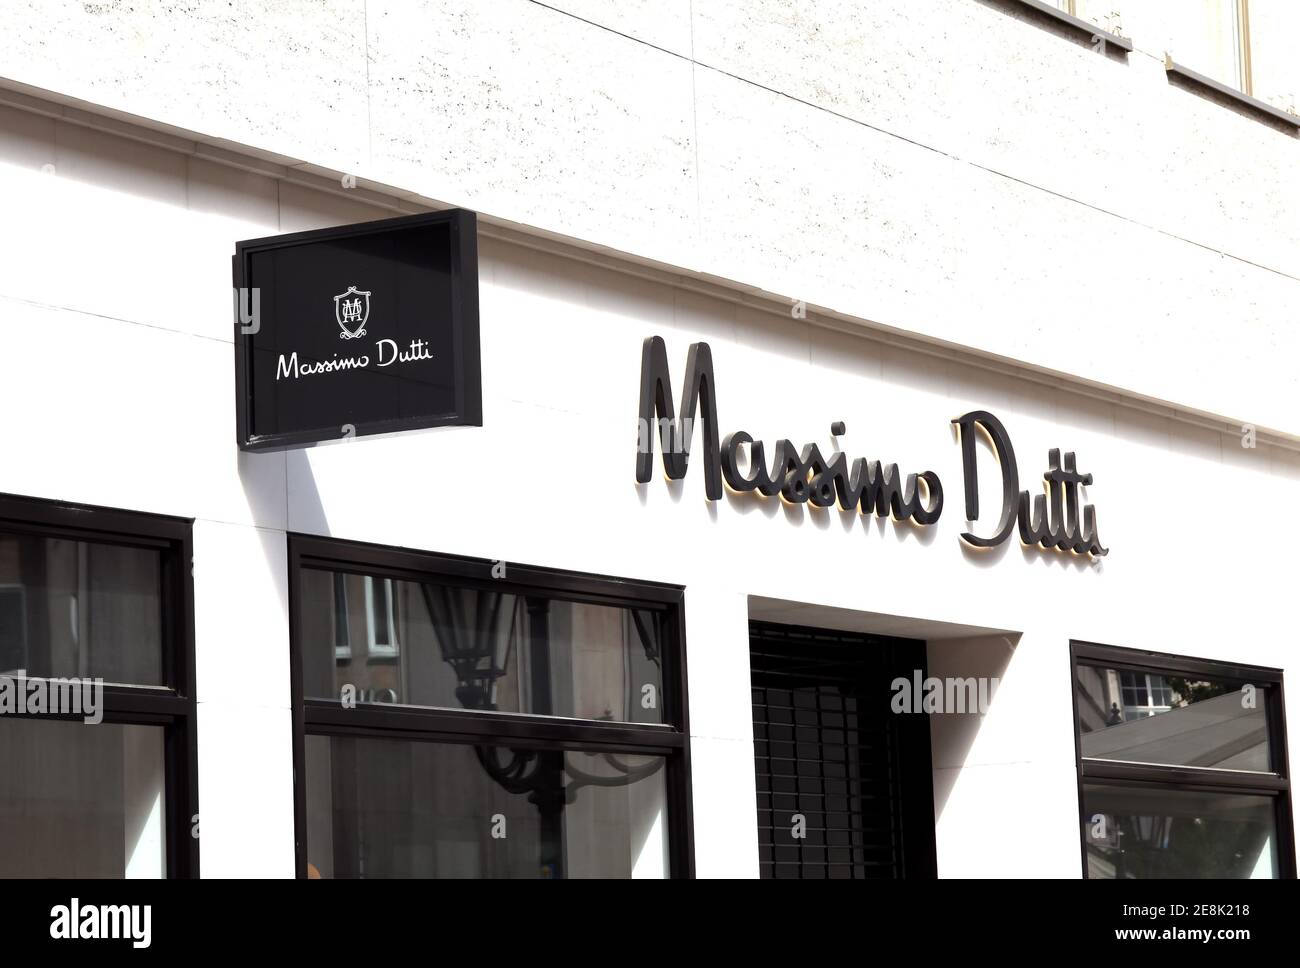 Nürnberg, Deutschland : MASSIMO DUTTI Fashion Store, Massimo Dutti ist ein  Bekleidungshersteller, der zur Inditex-Gruppe gehört Stockfotografie - Alamy